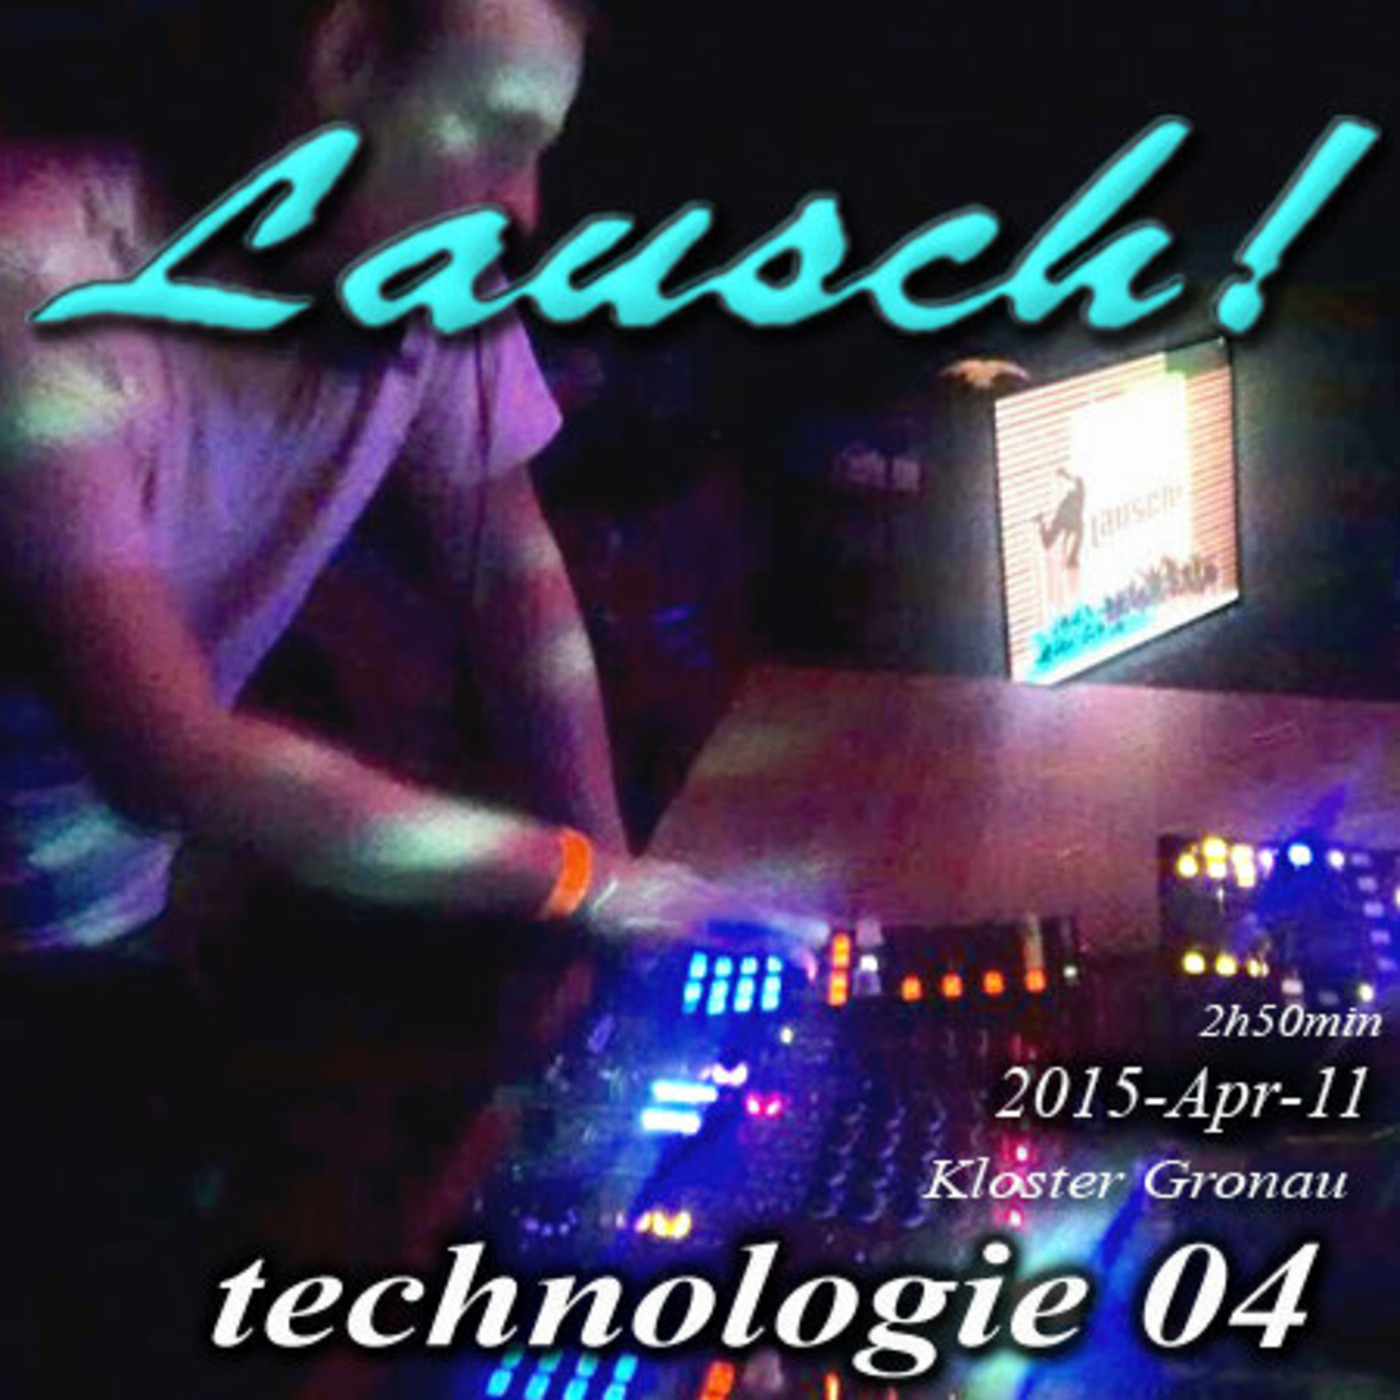 Lausch! @ Technologie 04, Kloster Gronau (15-04-11)